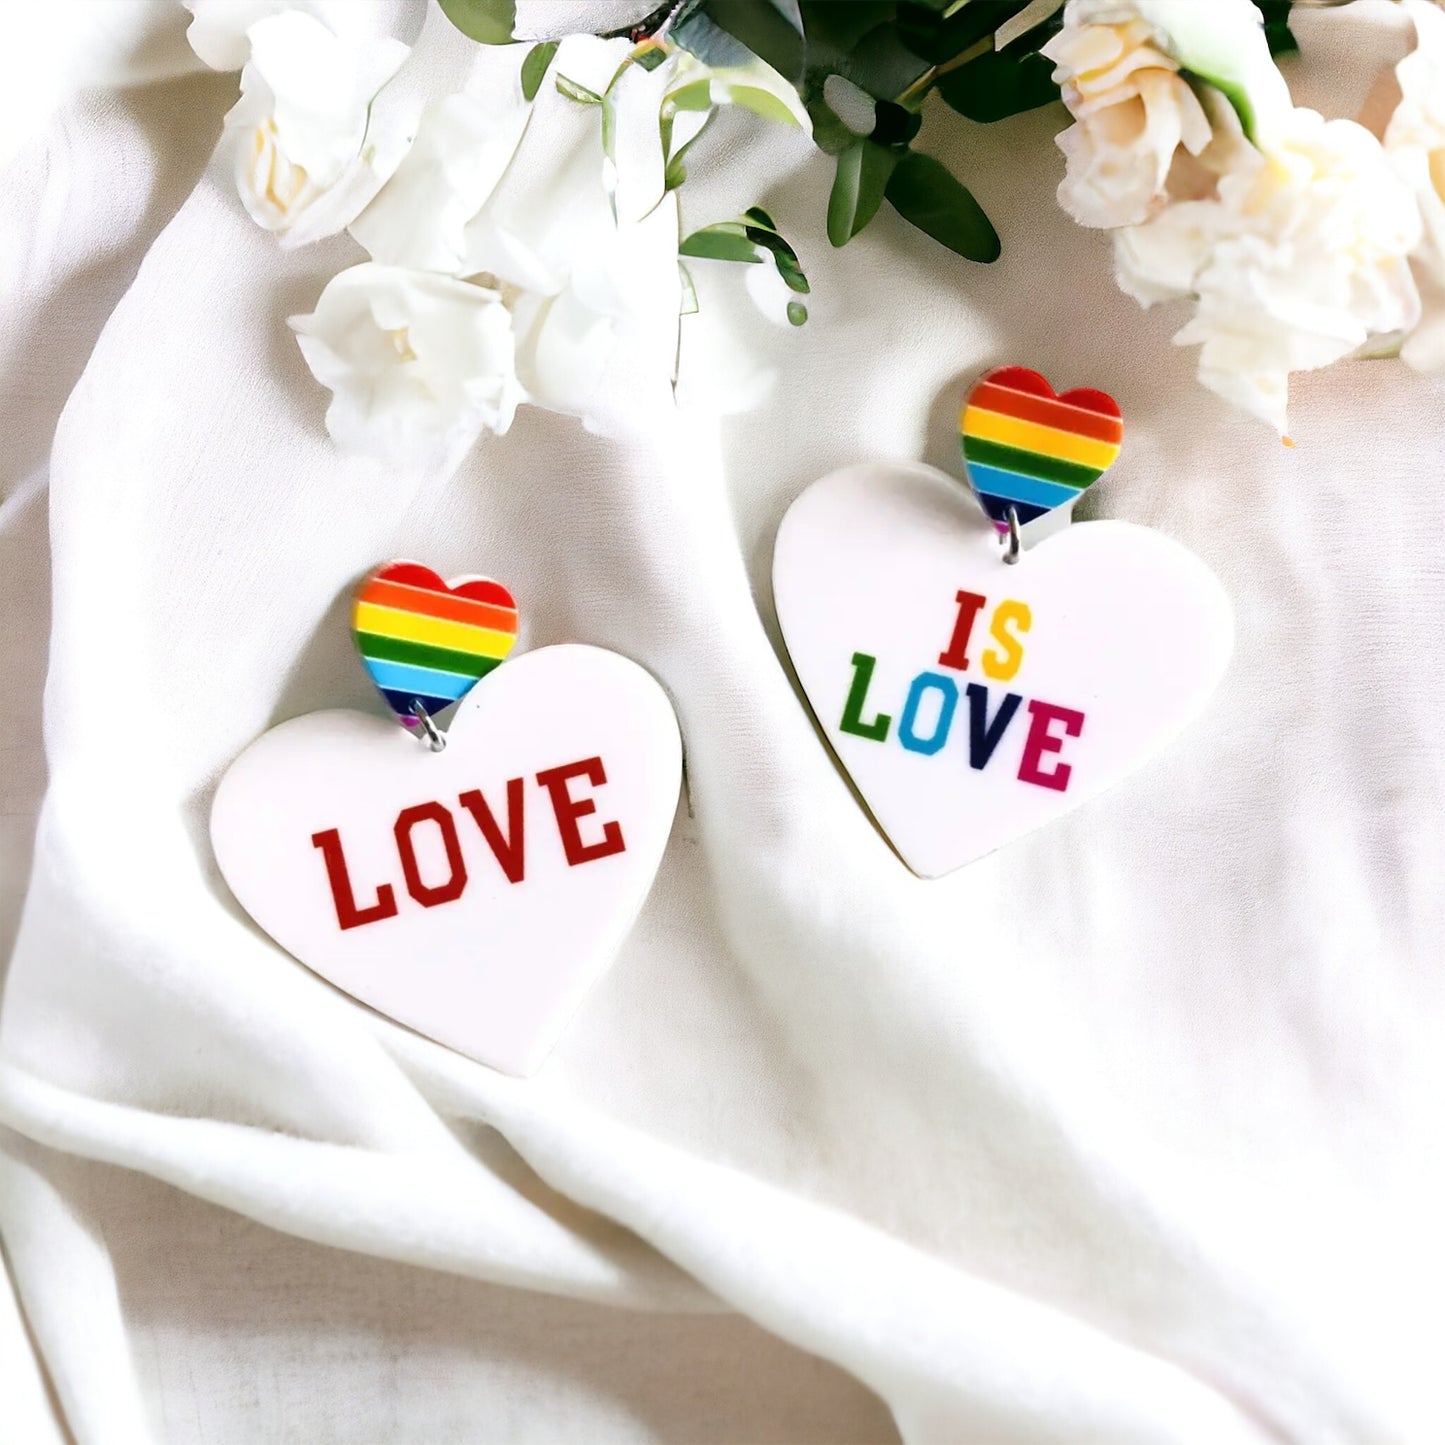 Love is Love Earrings - Rainbow Rhinestones, PRIDE Earrings, Rainbow Earrings, Pride Accessories, LGBTQ